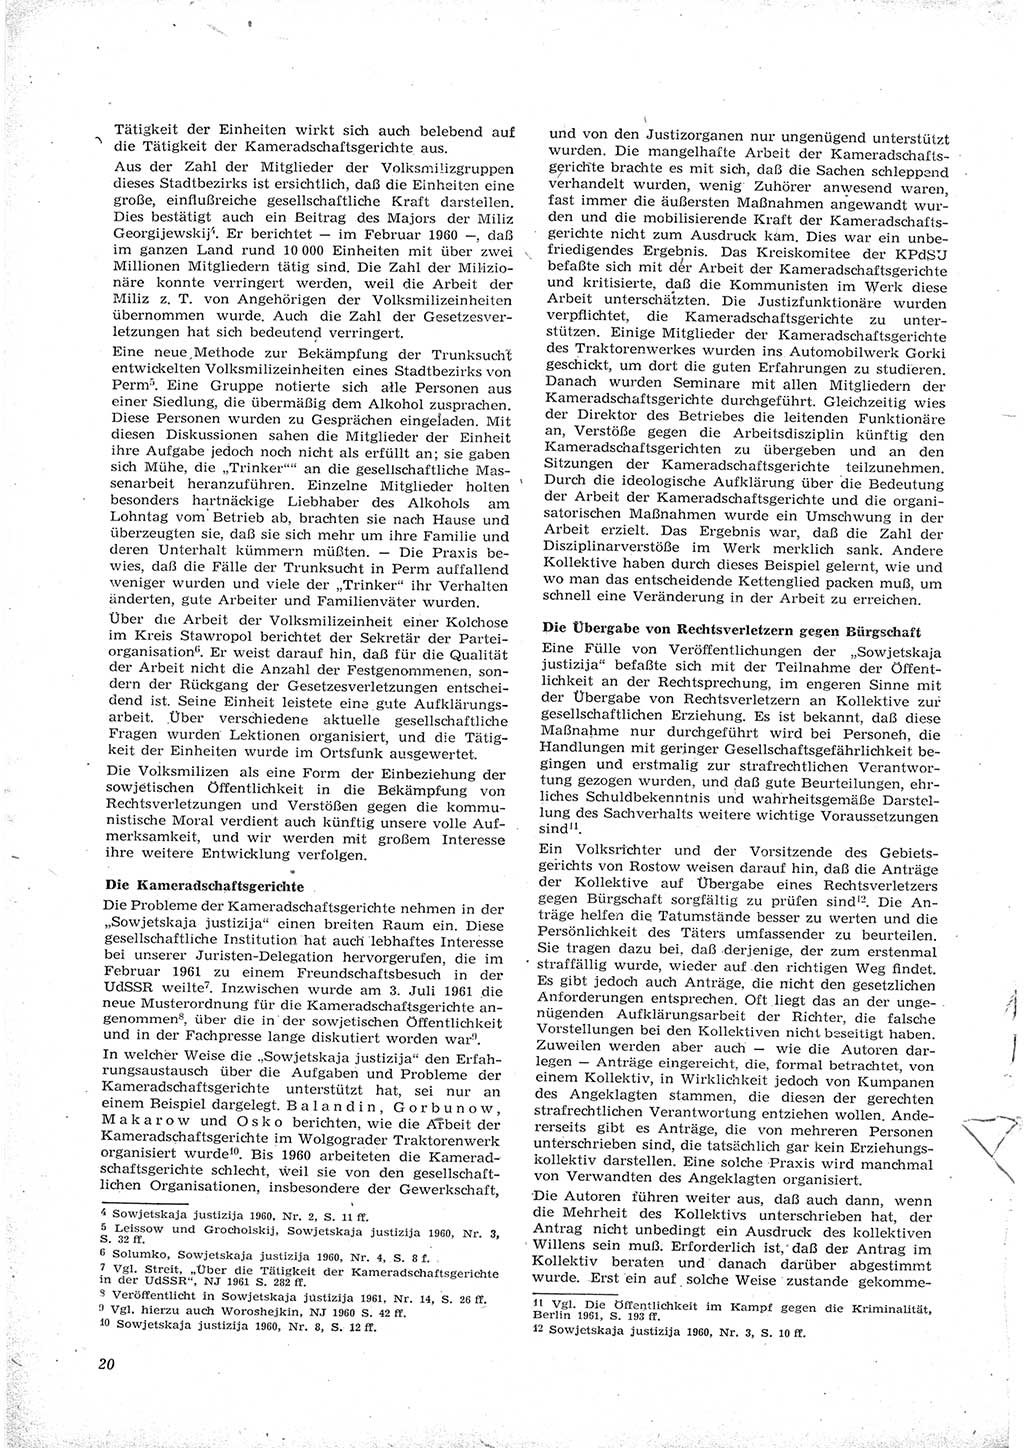 Neue Justiz (NJ), Zeitschrift für Recht und Rechtswissenschaft [Deutsche Demokratische Republik (DDR)], 16. Jahrgang 1962, Seite 20 (NJ DDR 1962, S. 20)